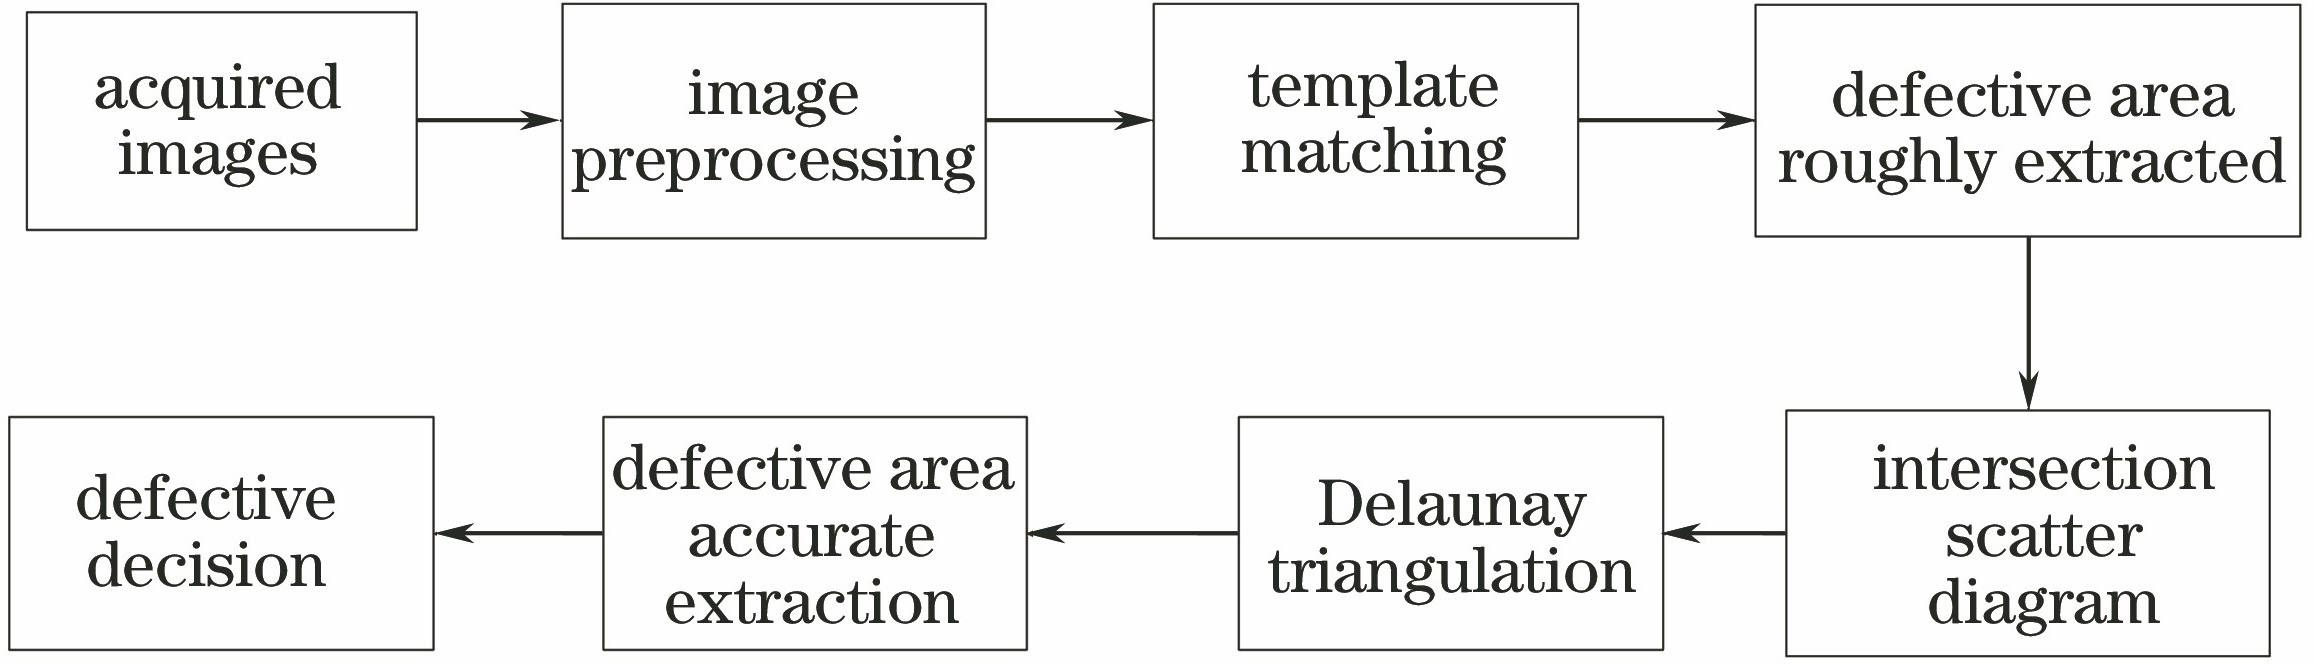 System framework of image processing